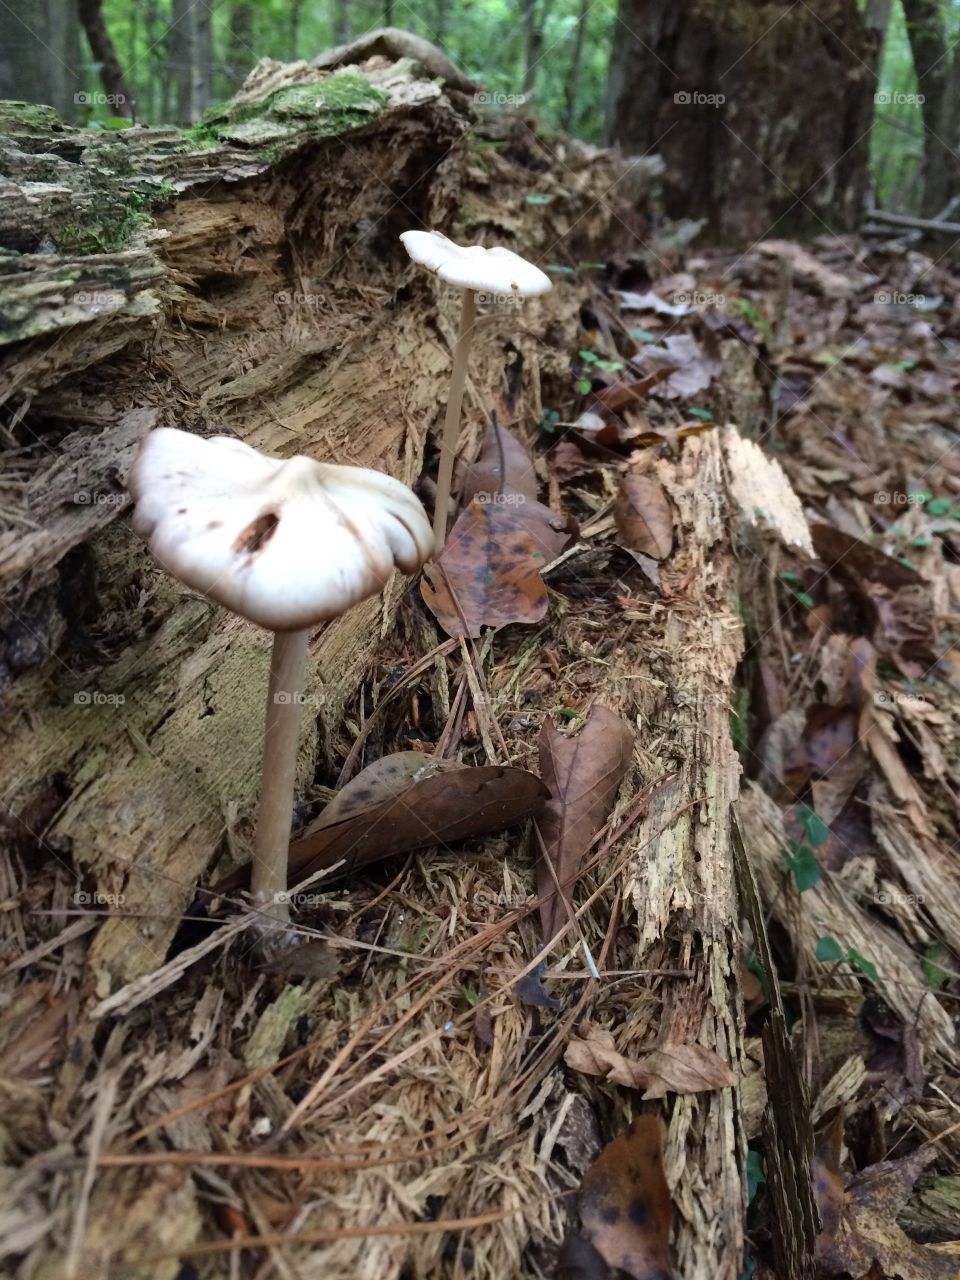 Little mushrooms on a log. 